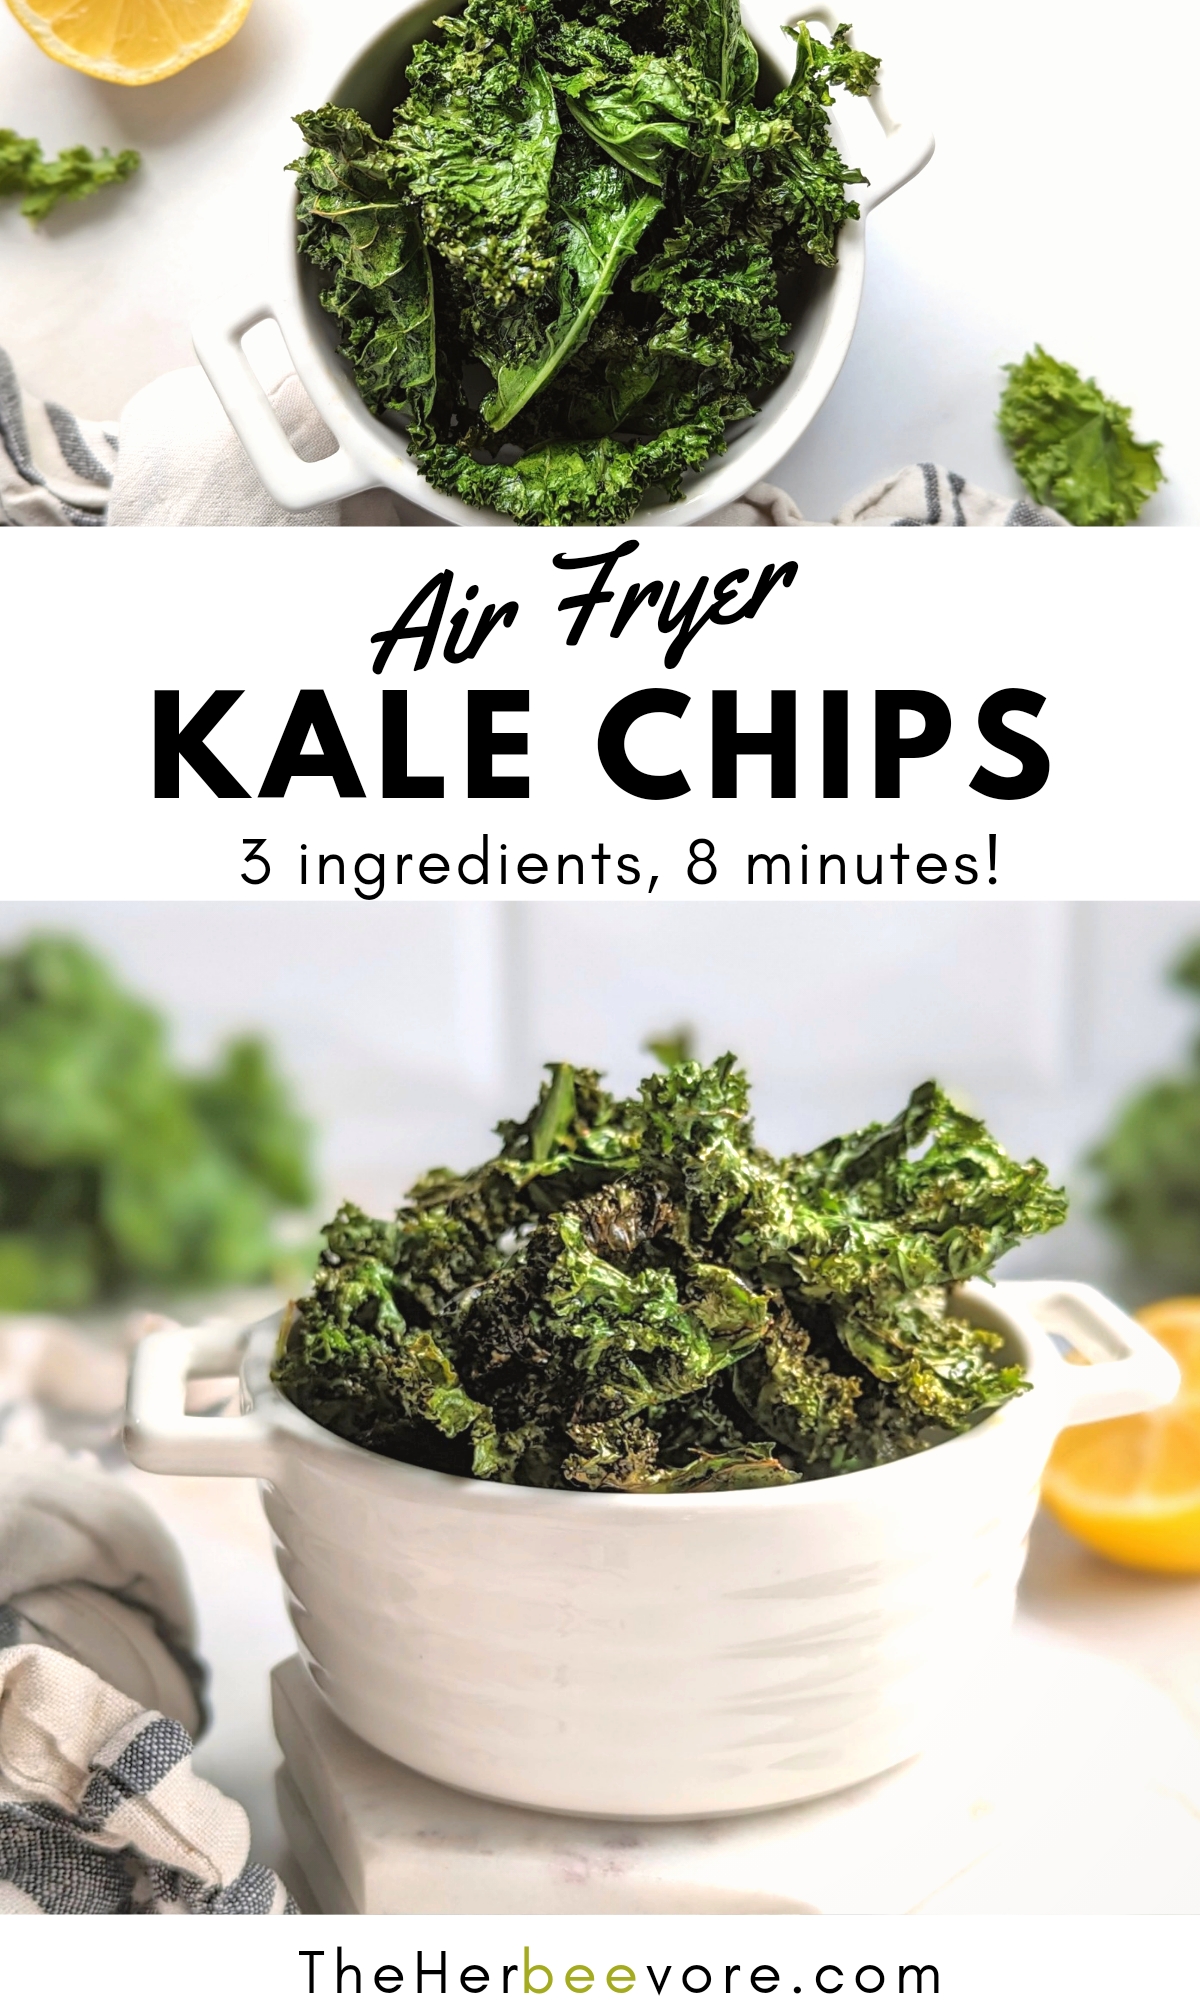 air fryer kale chips recipe easy kale chips in air fryer recipes healthy snacks with kale chips easy vegan vegetarian